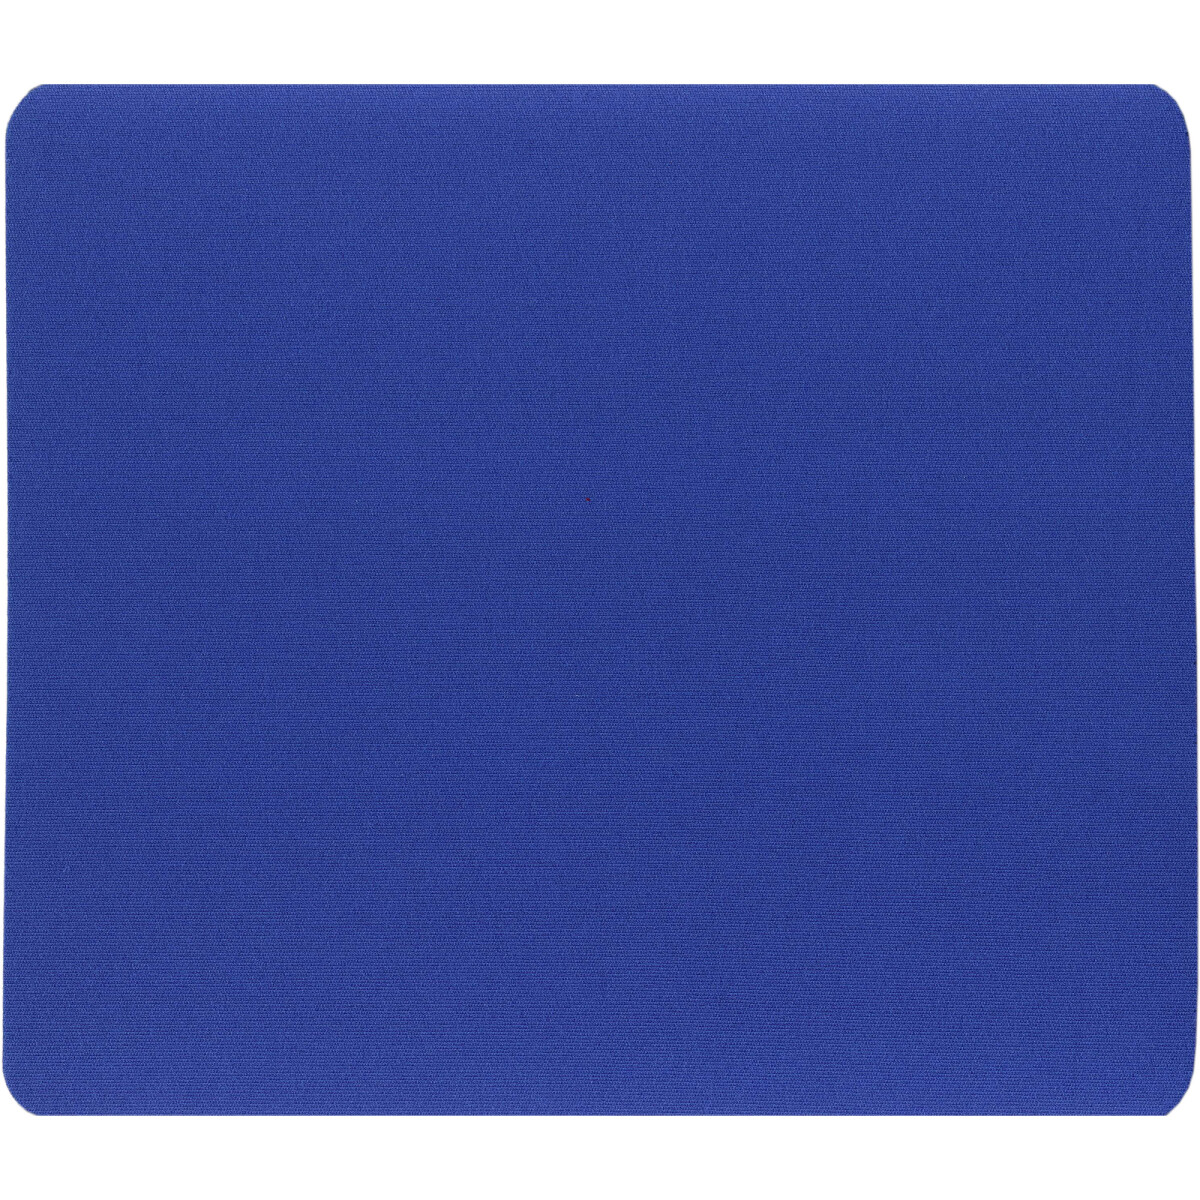 InLine® Maus-Pad 250x220x6mm, blau